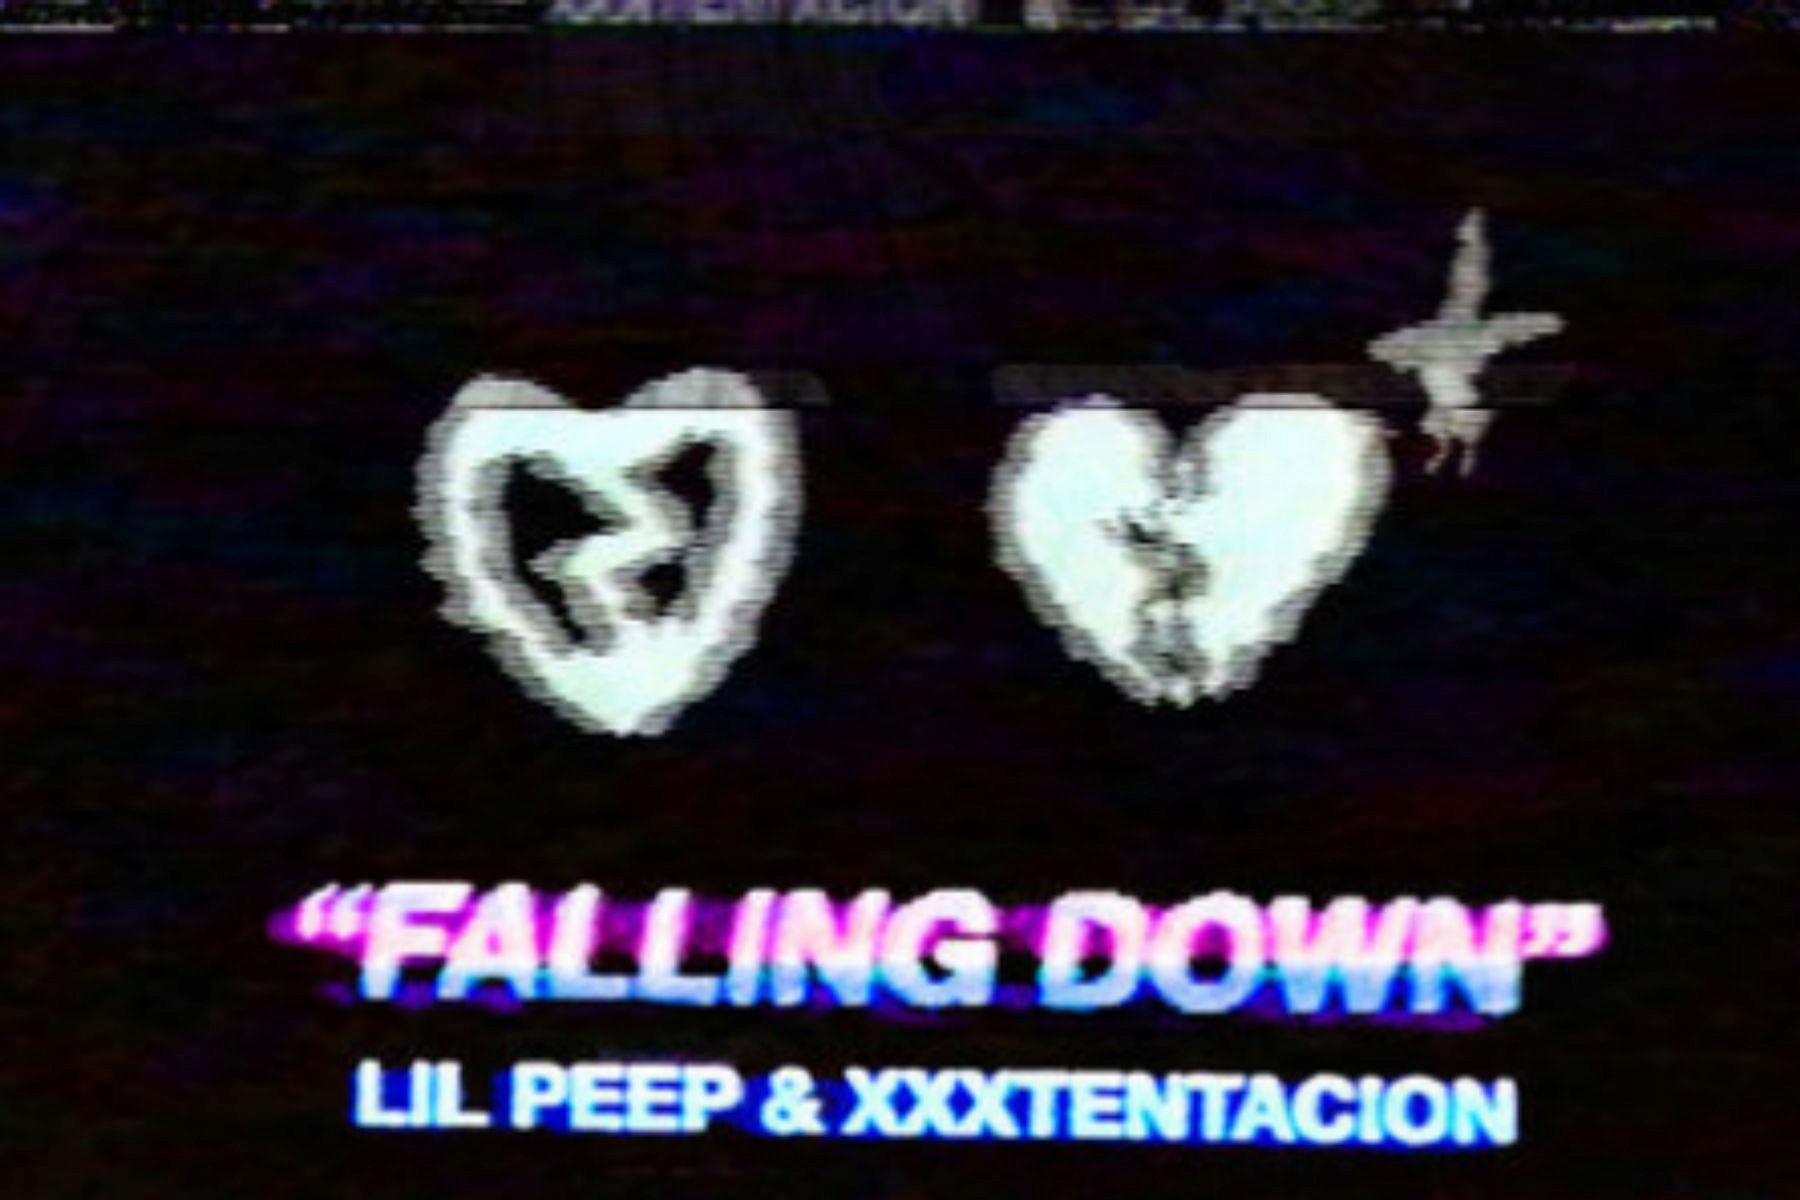 Portada de la cancin Falling down, de Lil Peep y XXXTentacion